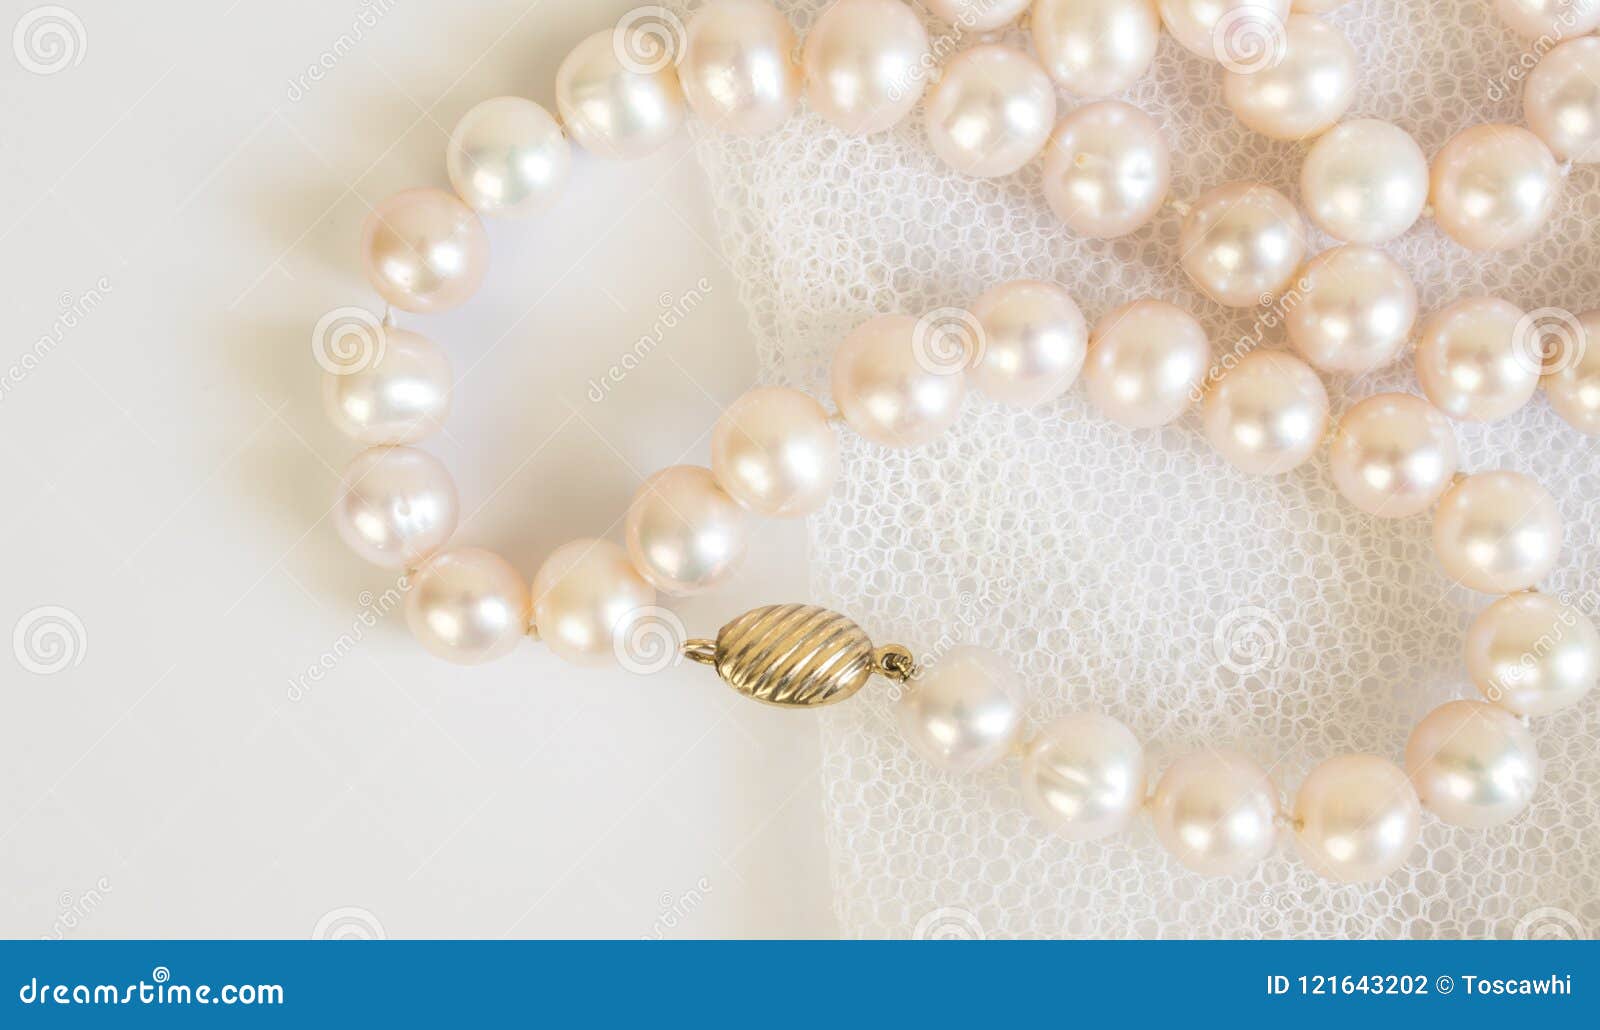 vivienne westwood pearl | Saturn necklace, Space necklace, Vivienne  westwood pearl necklace